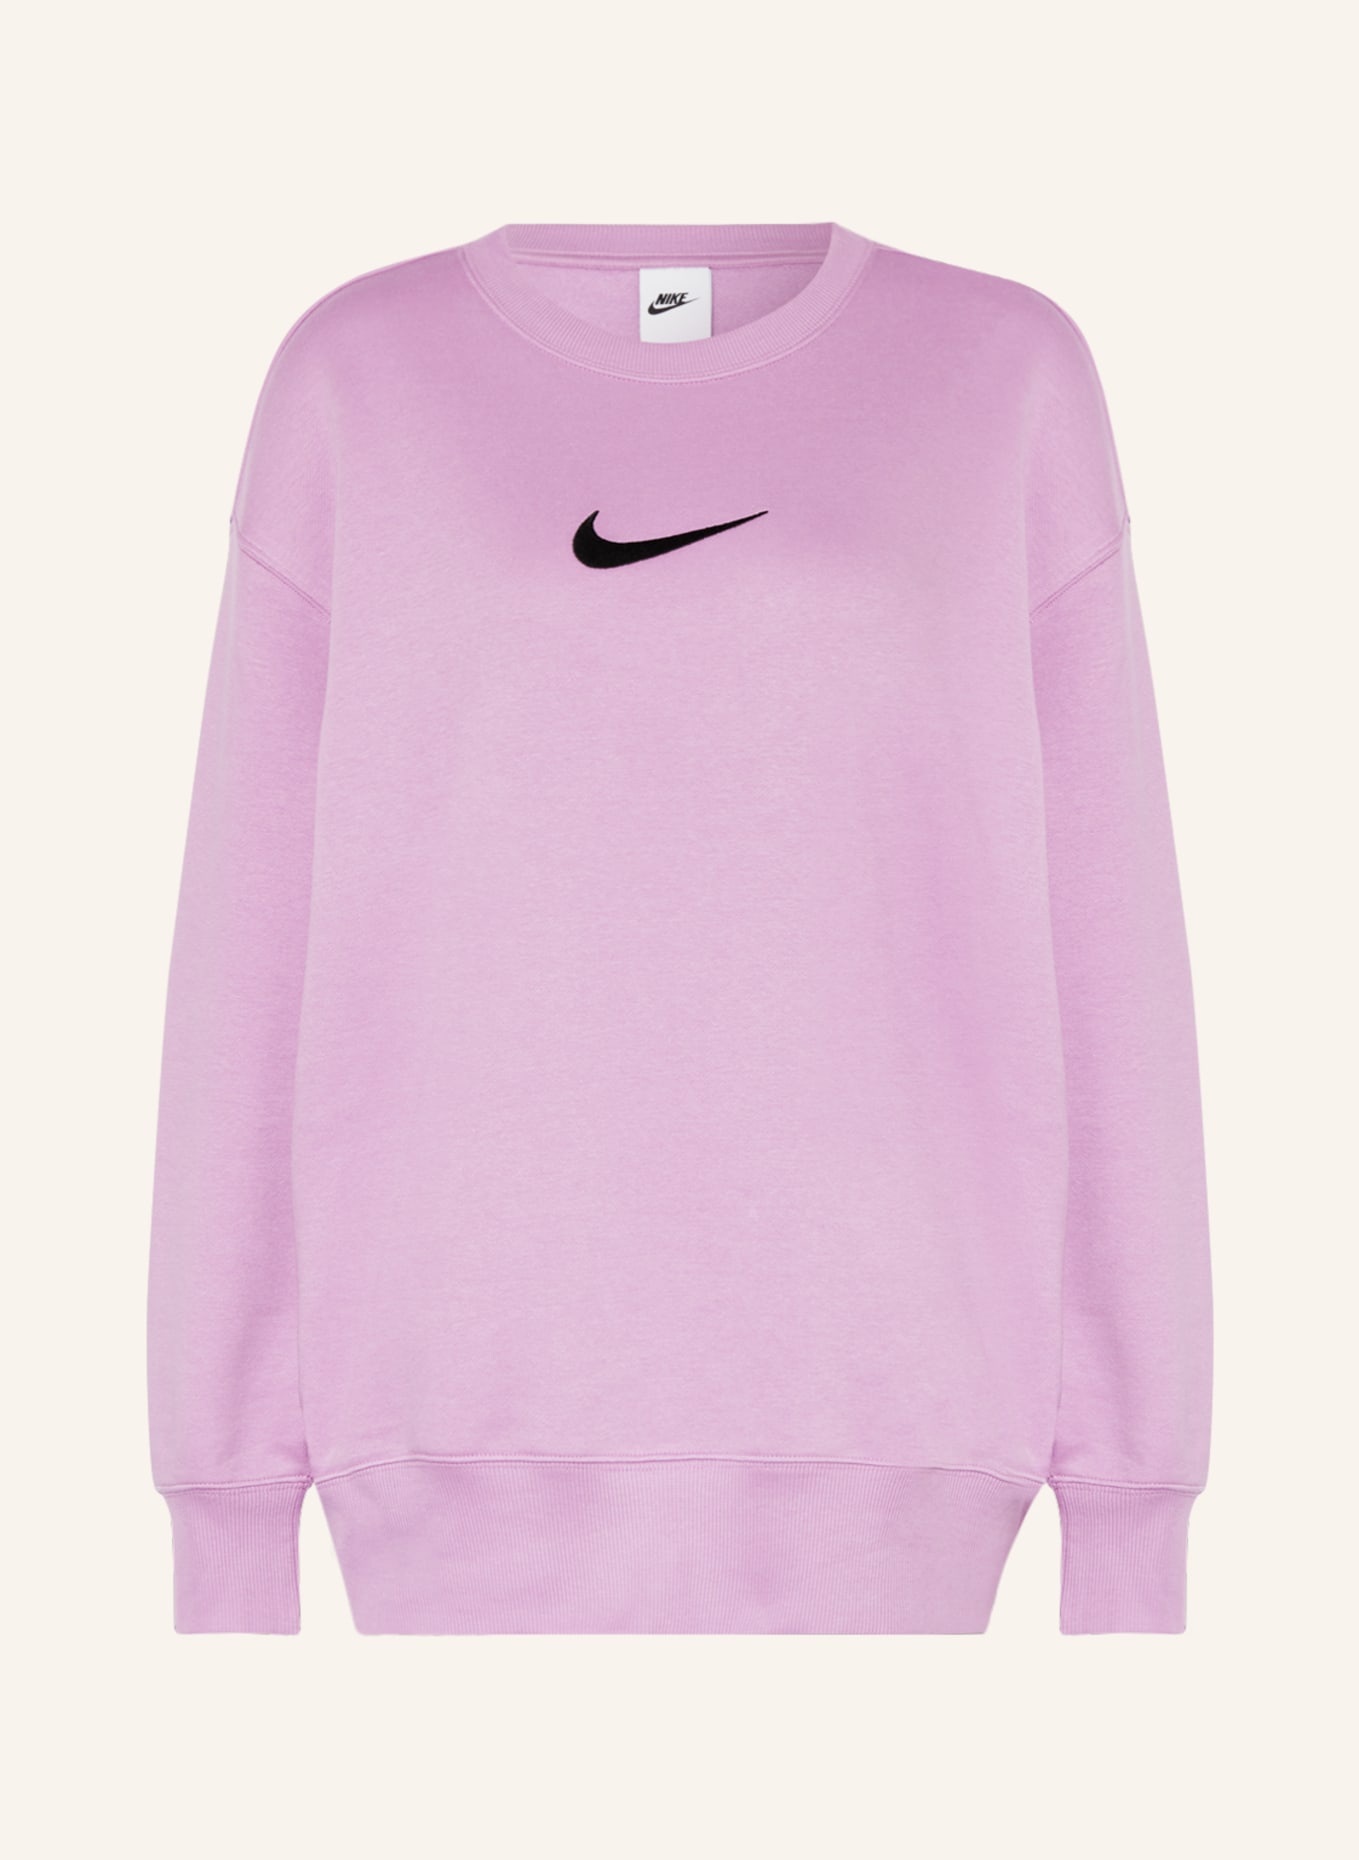 Nike Sweatshirt, Color: LIGHT PURPLE (Image 1)